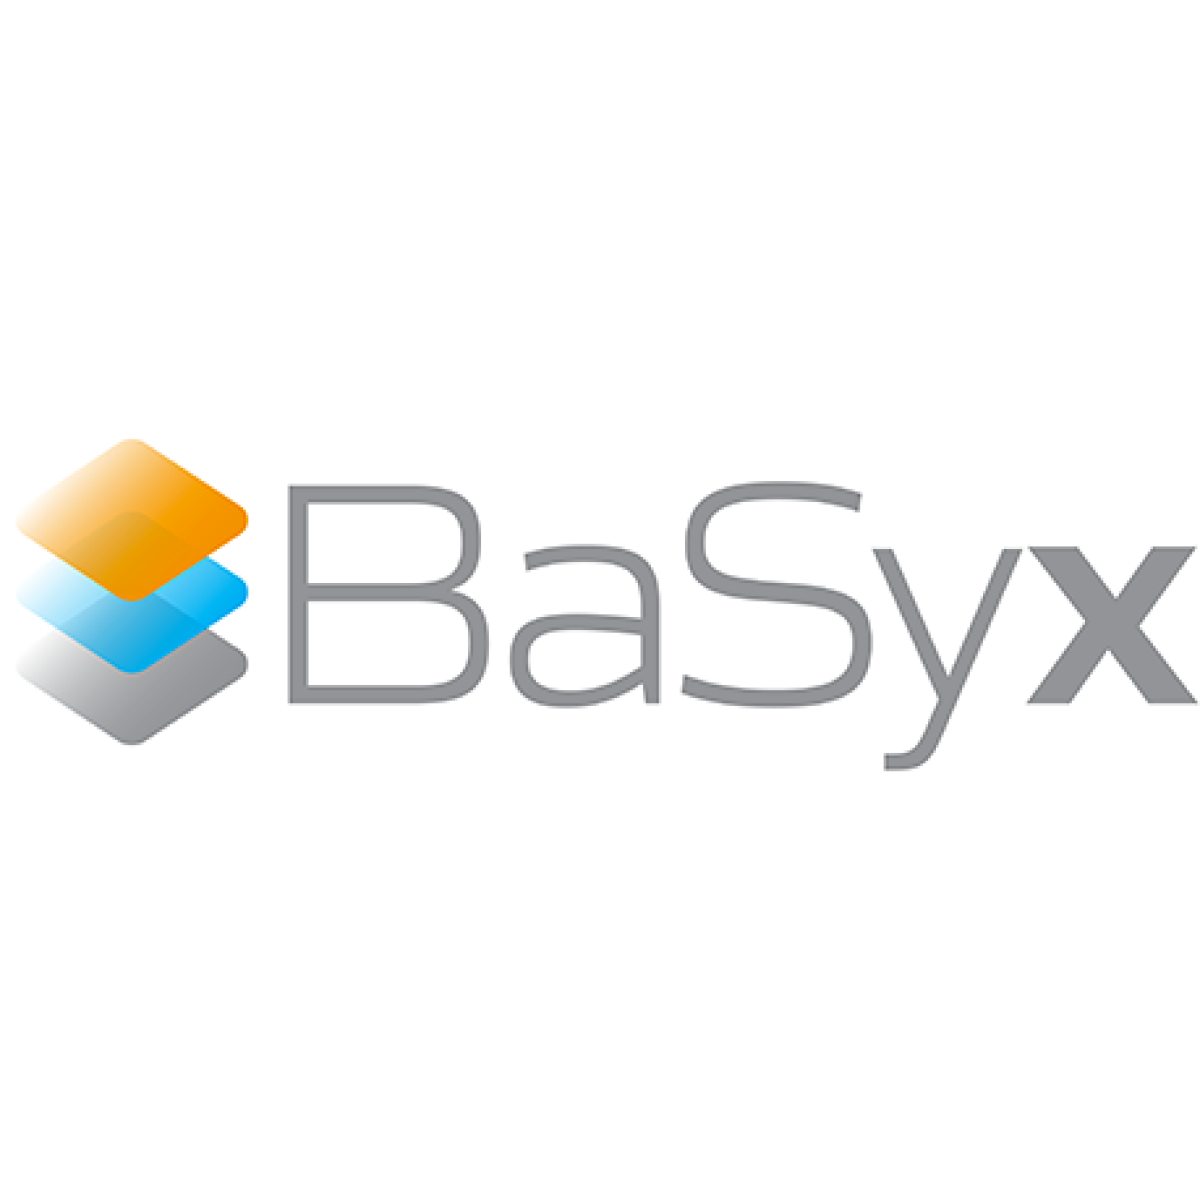 App für die Anzeige der Asset Administration Shell BaSyx-AAS - OPEN SOURCE